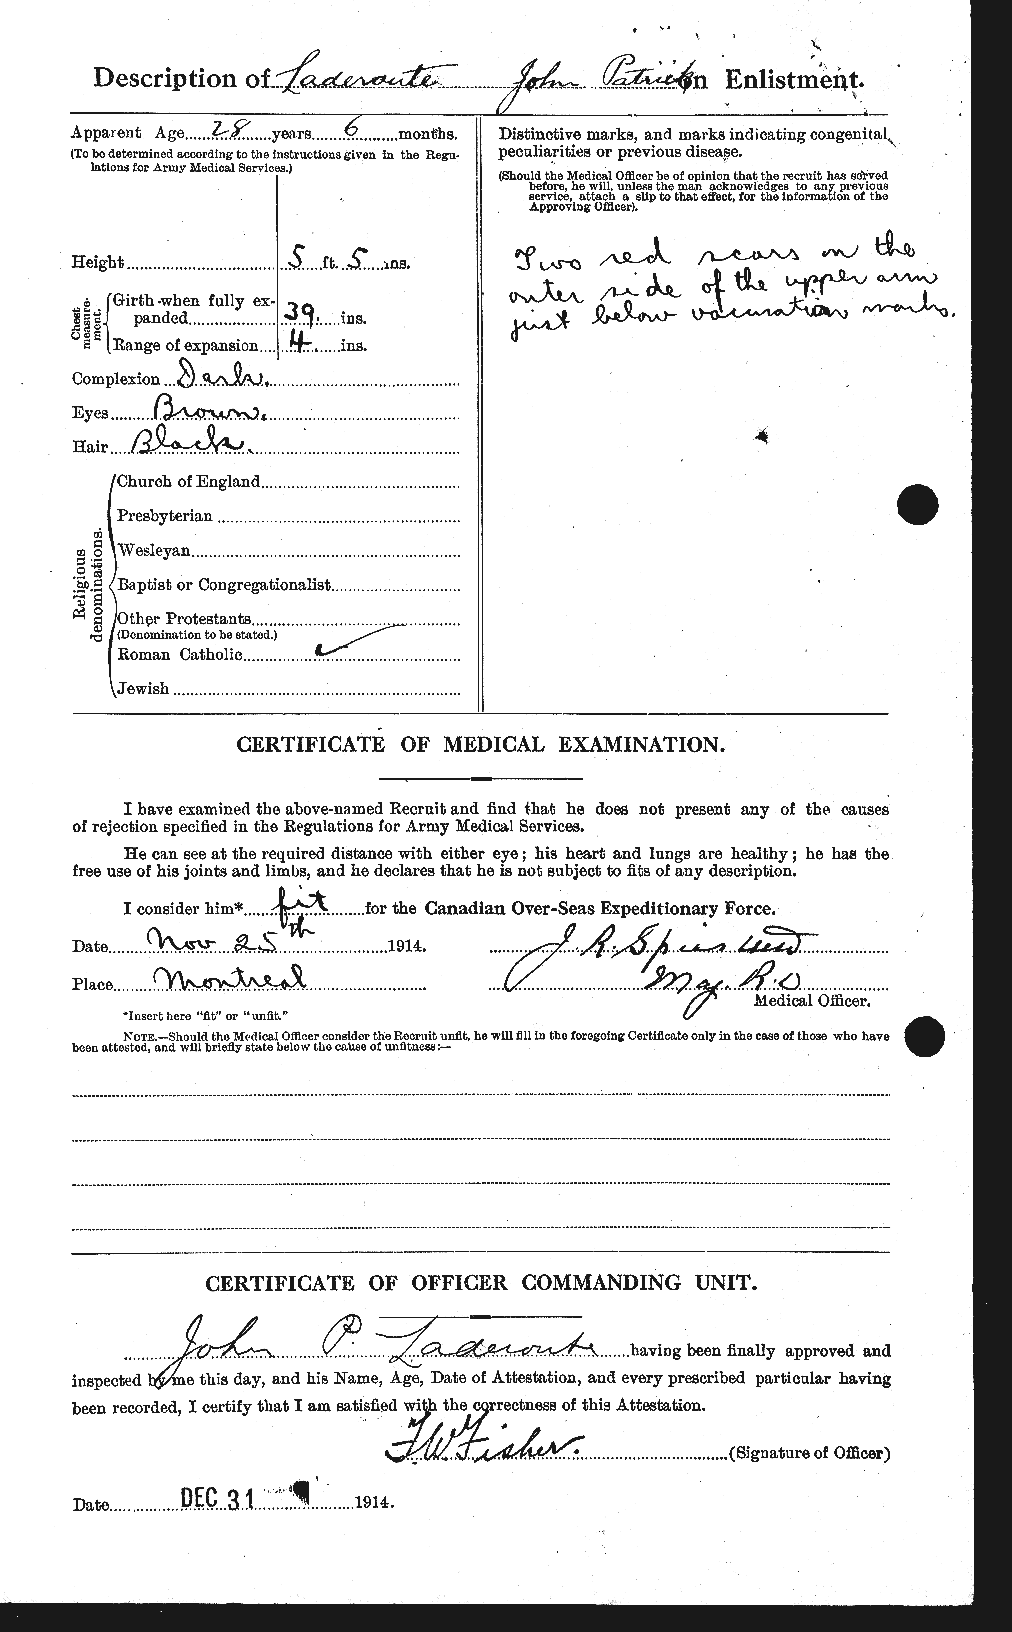 Dossiers du Personnel de la Première Guerre mondiale - CEC 444698b